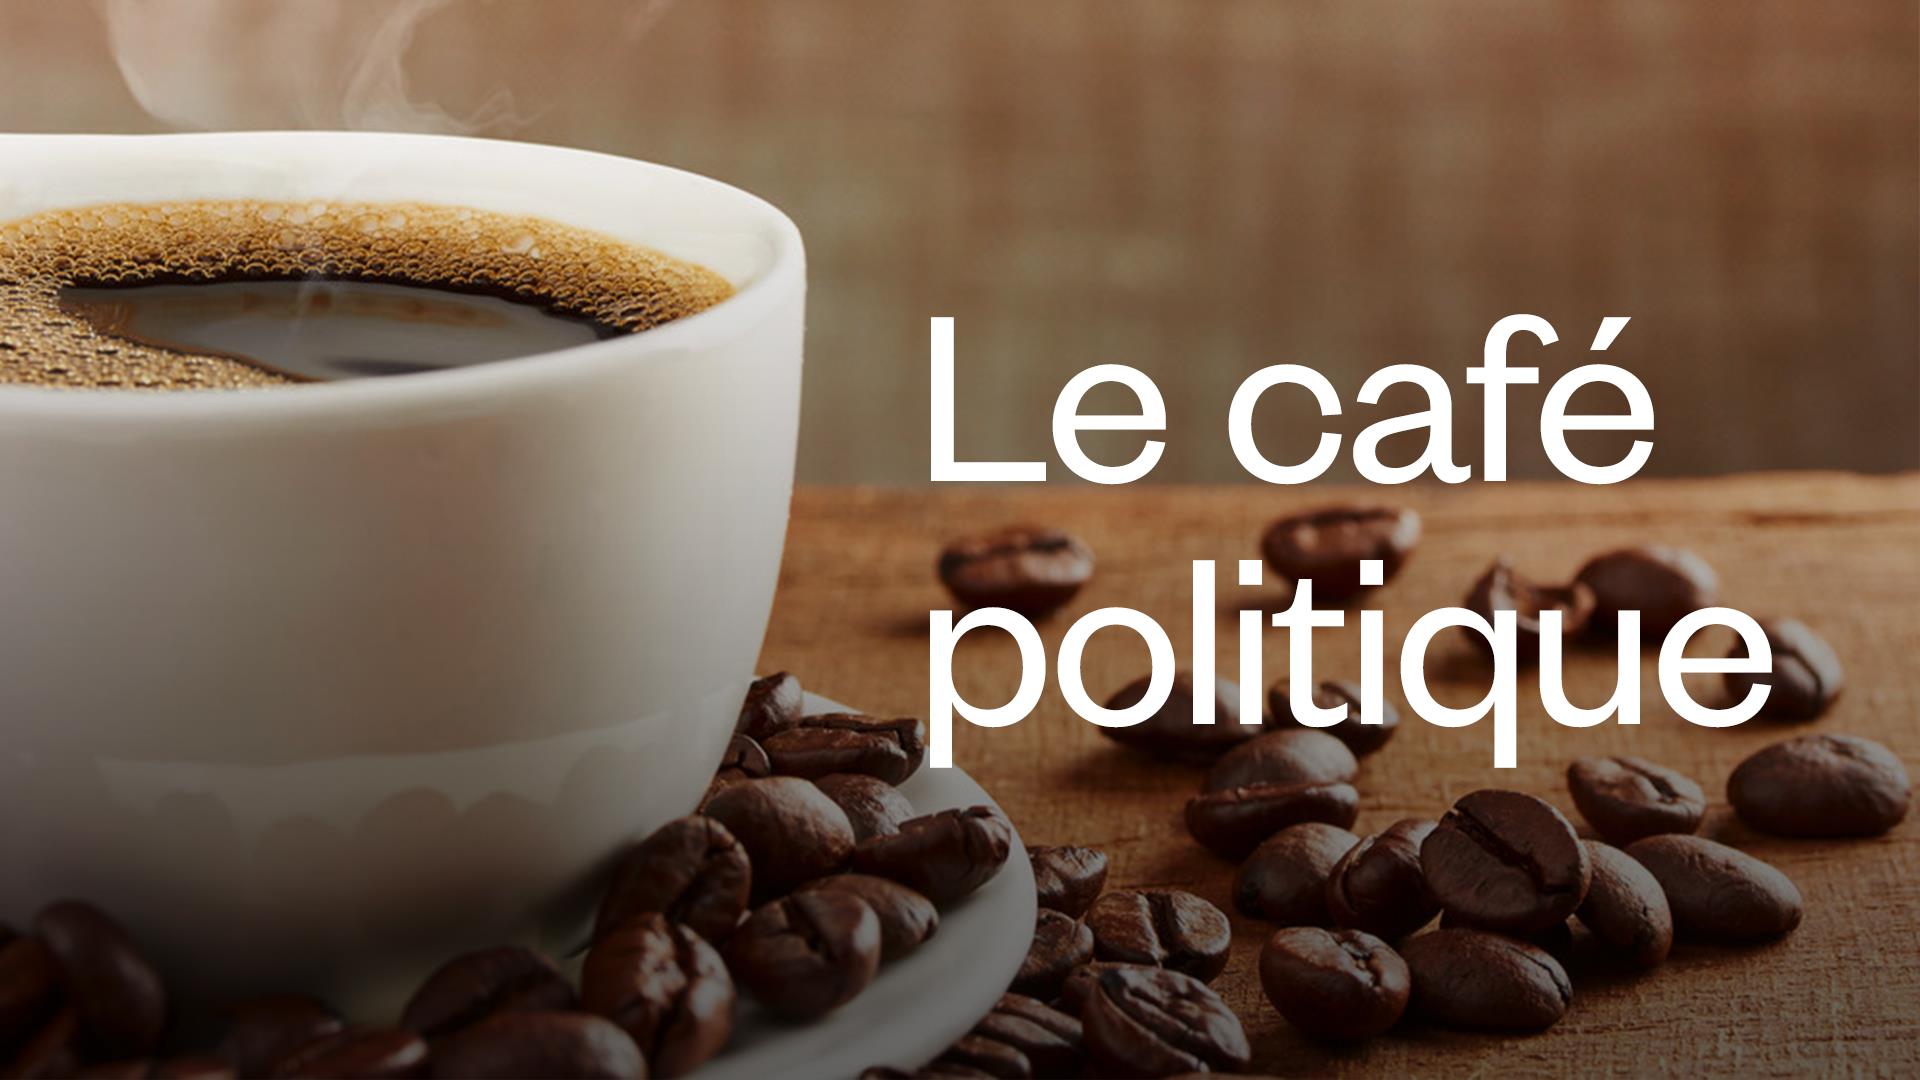 Le café politique de La matinale
Le café politique de La matinale